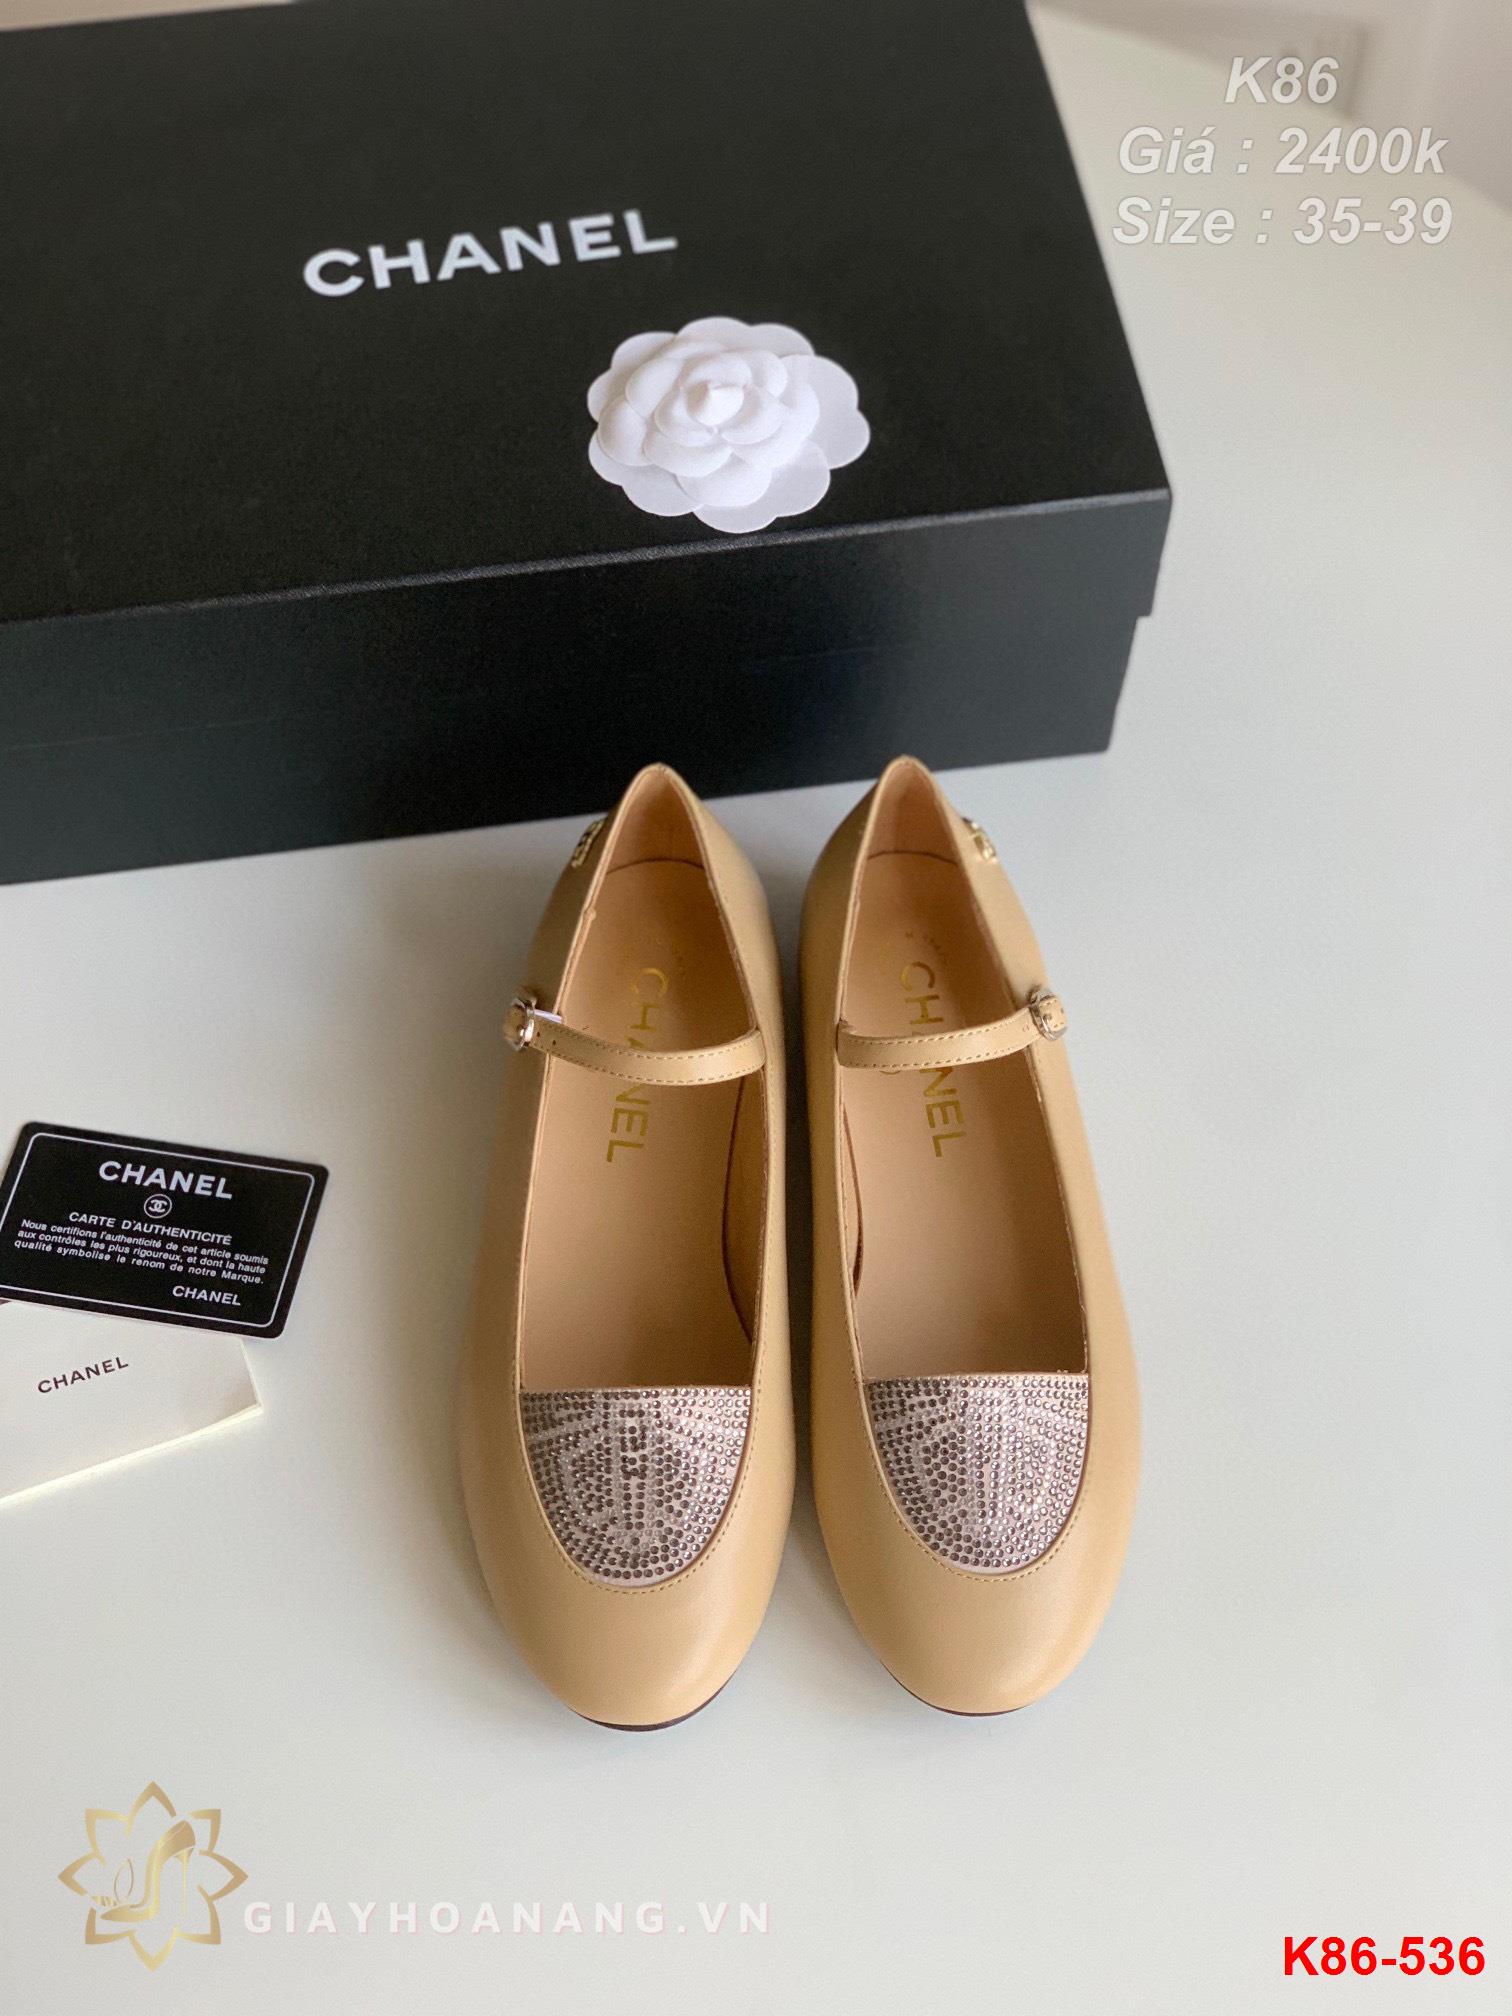 K86-536 Chanel giày bệt siêu cấp